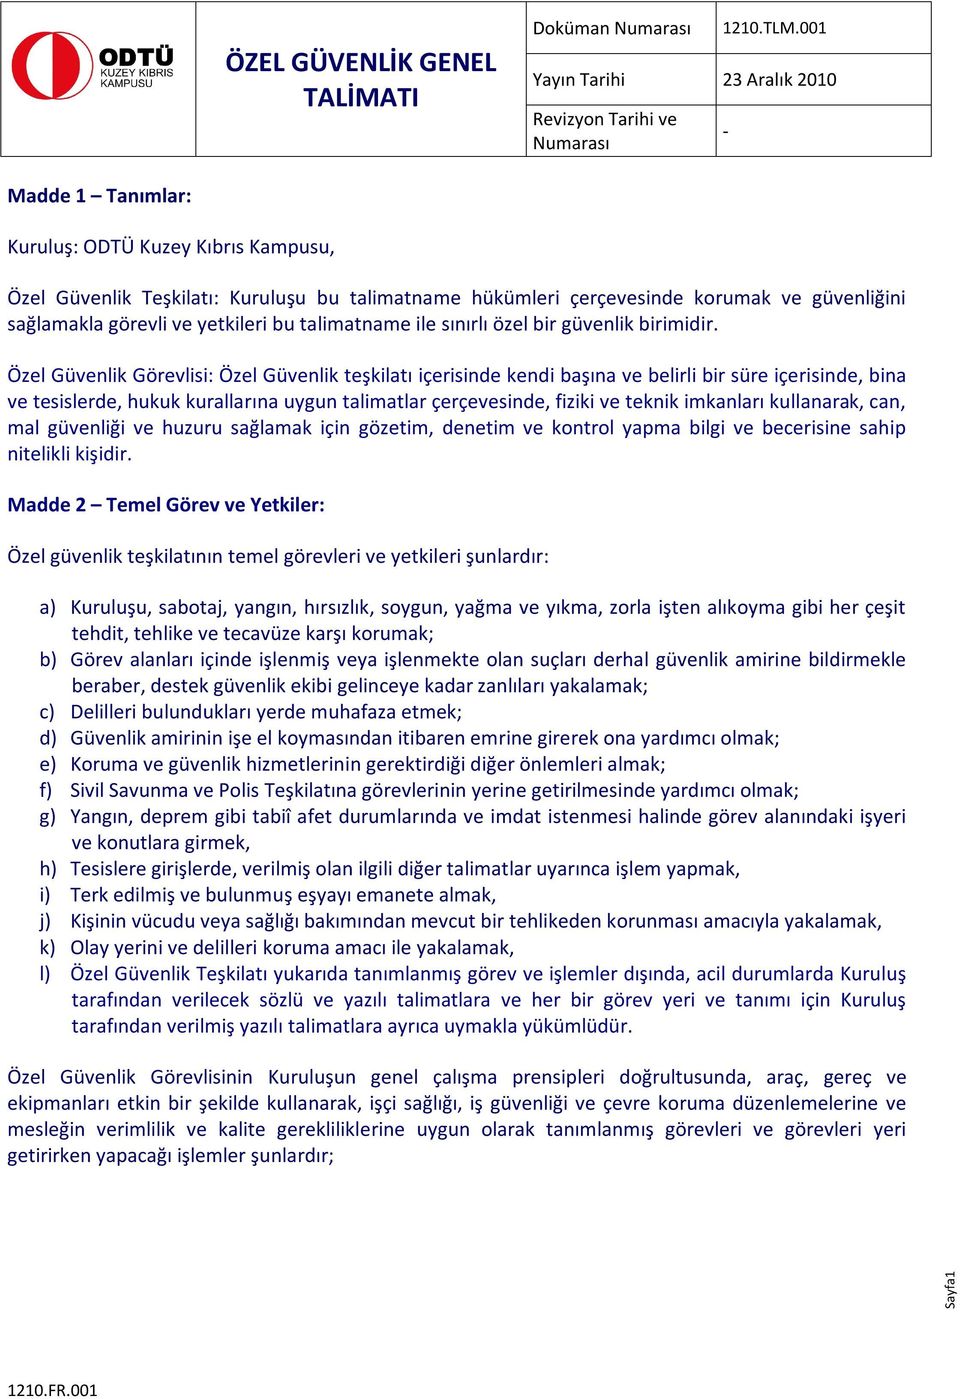 ÖZEL GÜVENLİK GENEL TALİMATI - PDF Ücretsiz indirin